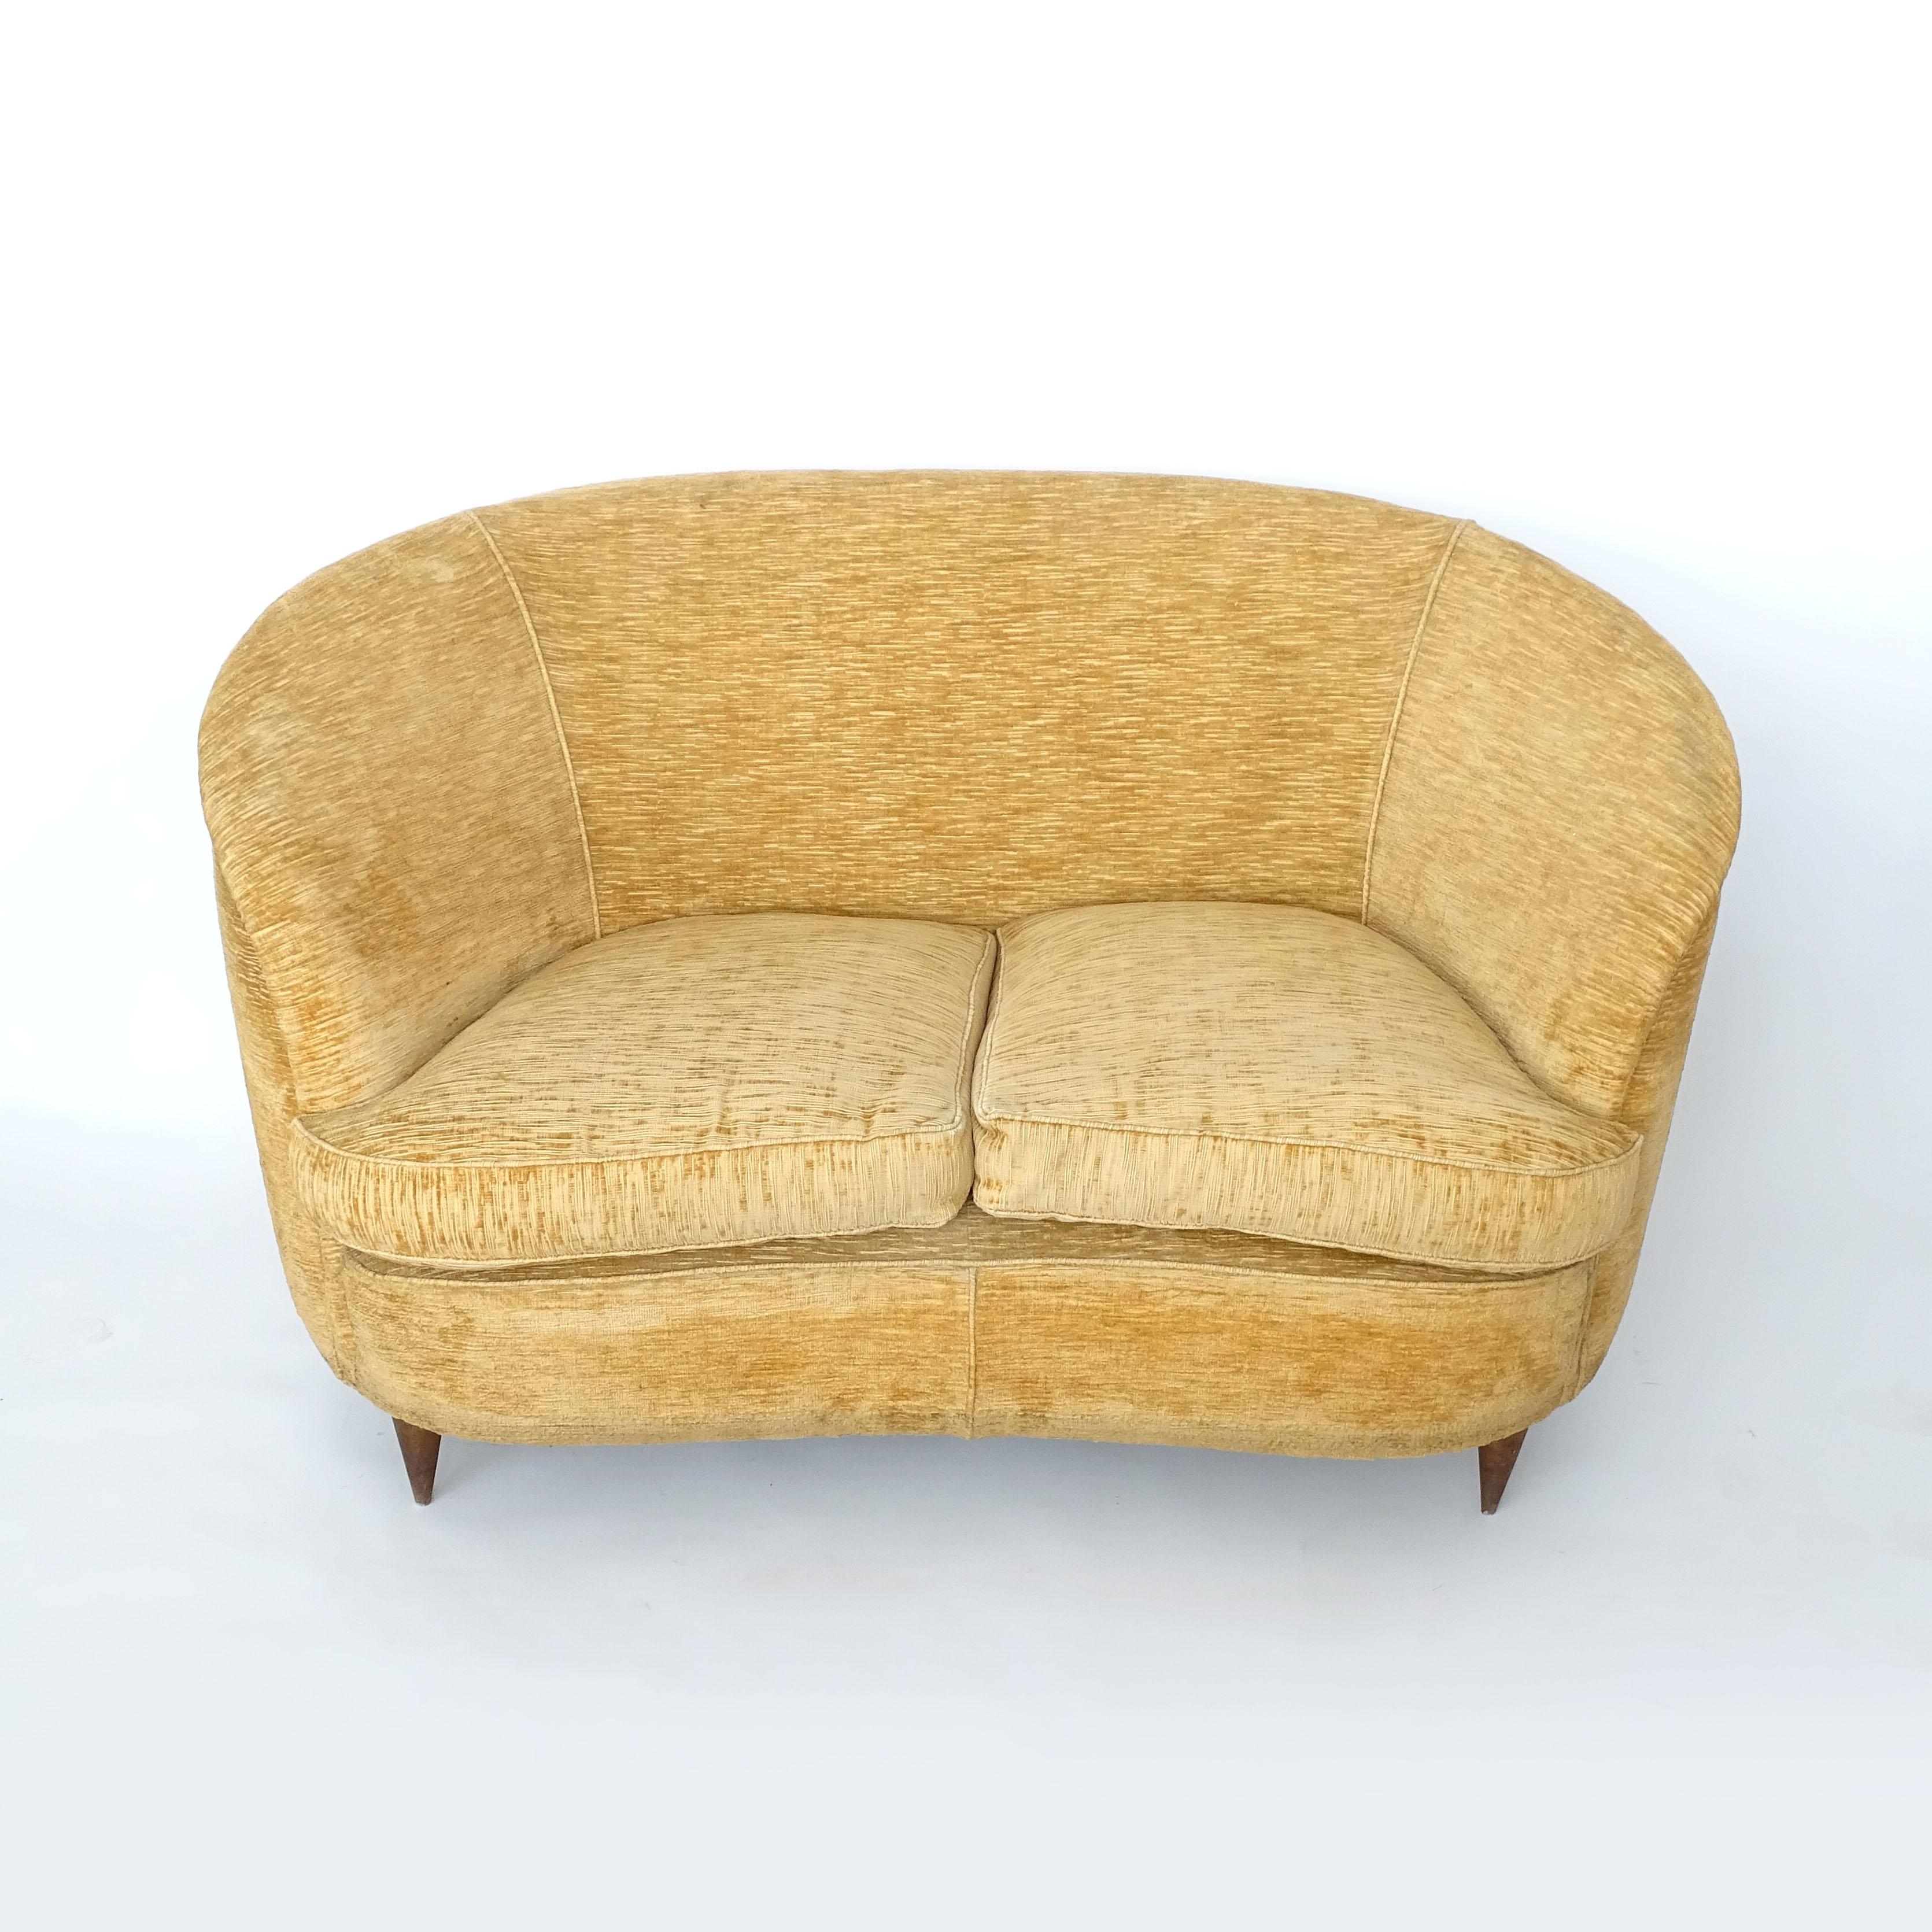 Italian Love seat sofa by Casa & Giardino, Italy 1940s